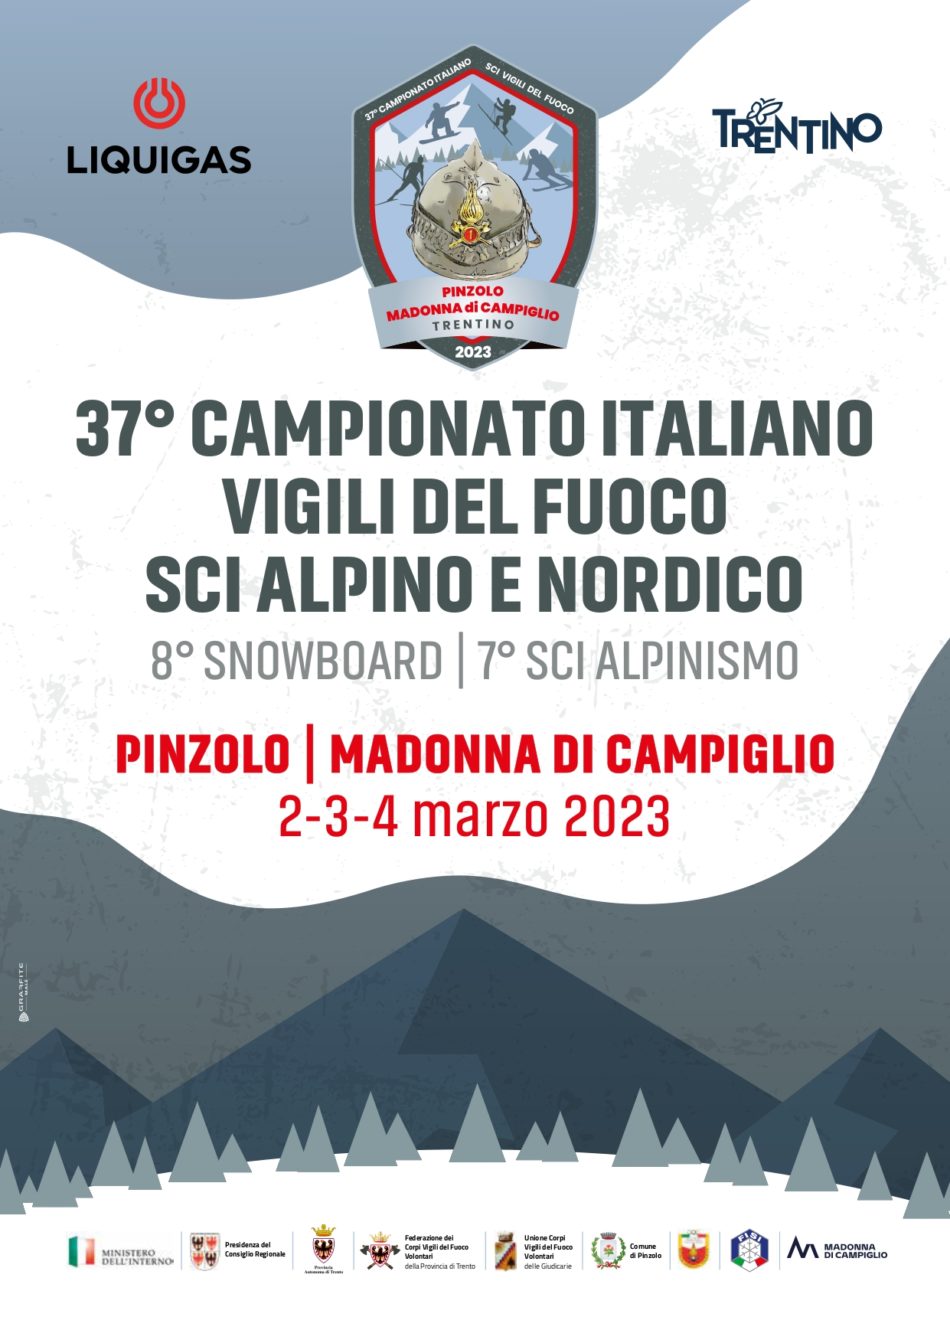 37° Campionato Italiano Vigili del Fuoco – Pinzolo Madonna di Campiglio 2-3-4 marzo 2023